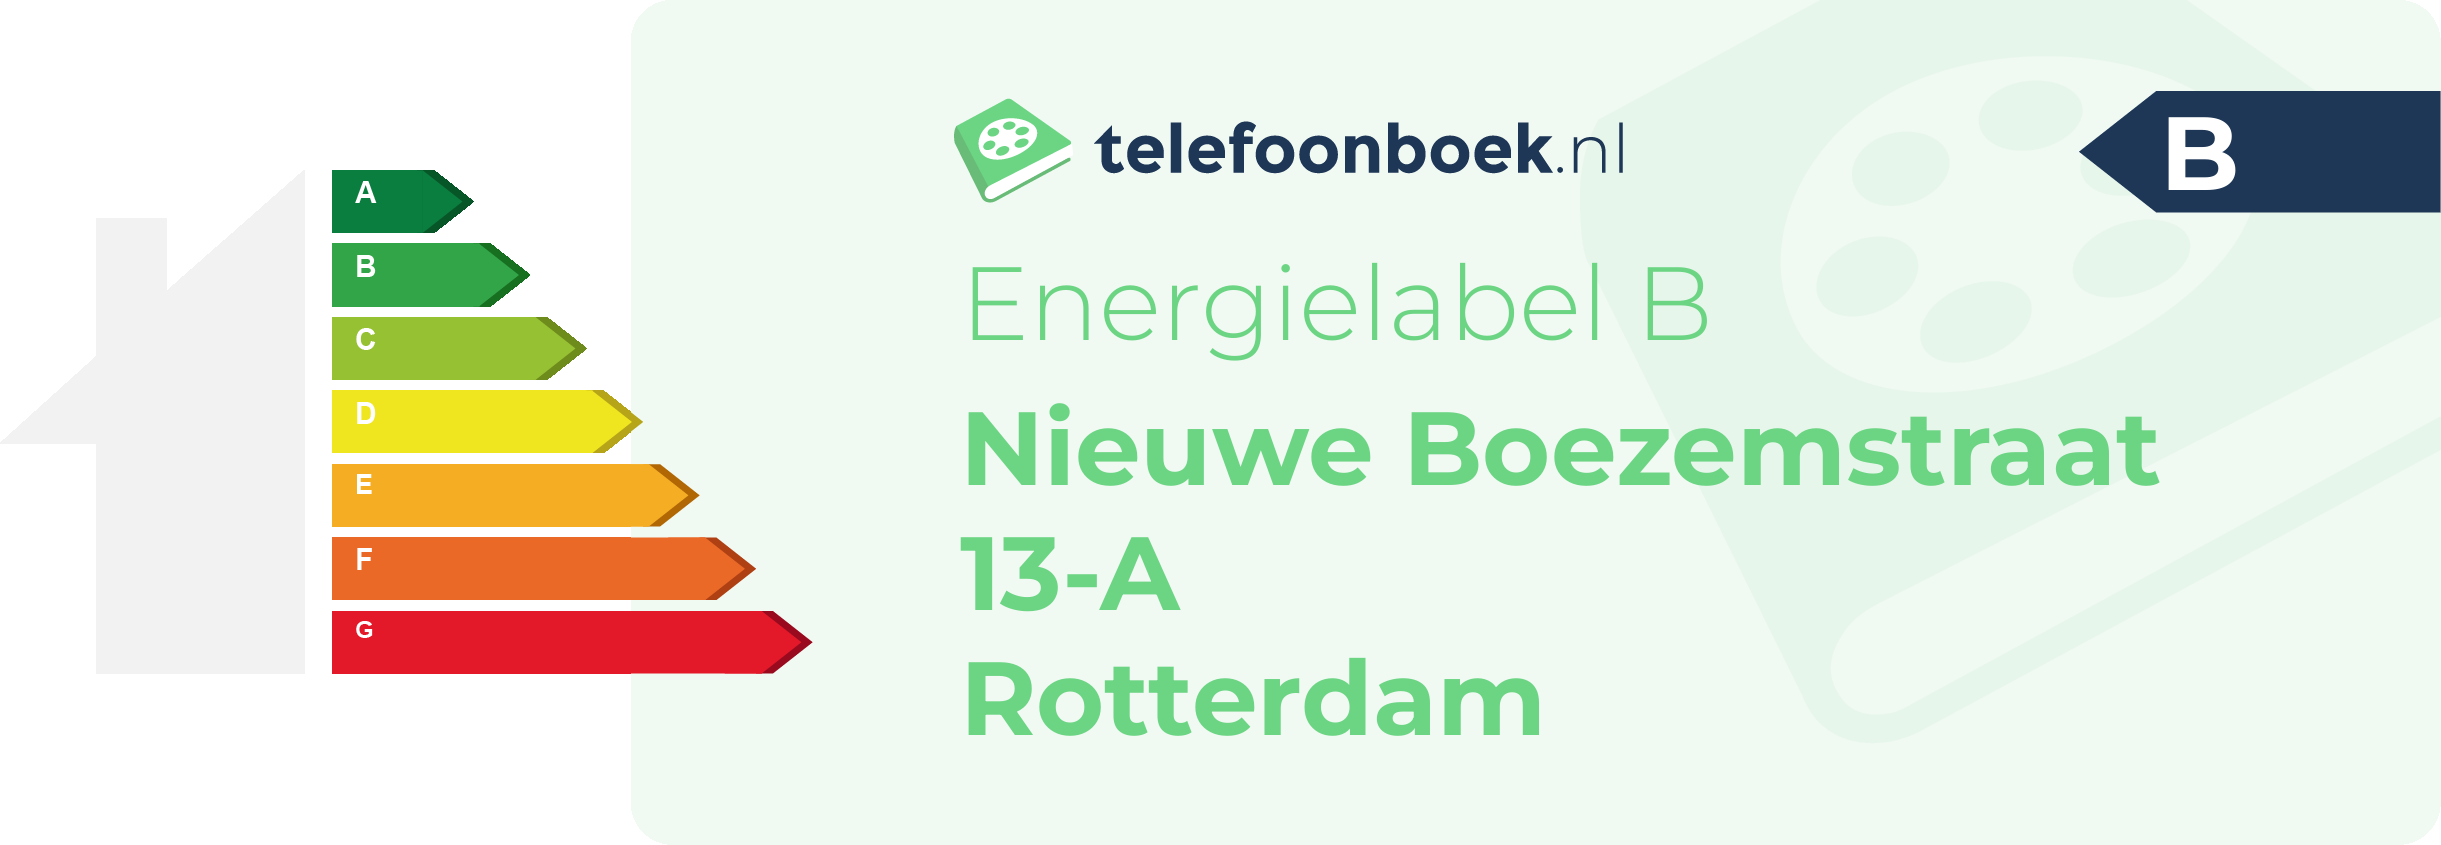 Energielabel Nieuwe Boezemstraat 13-A Rotterdam